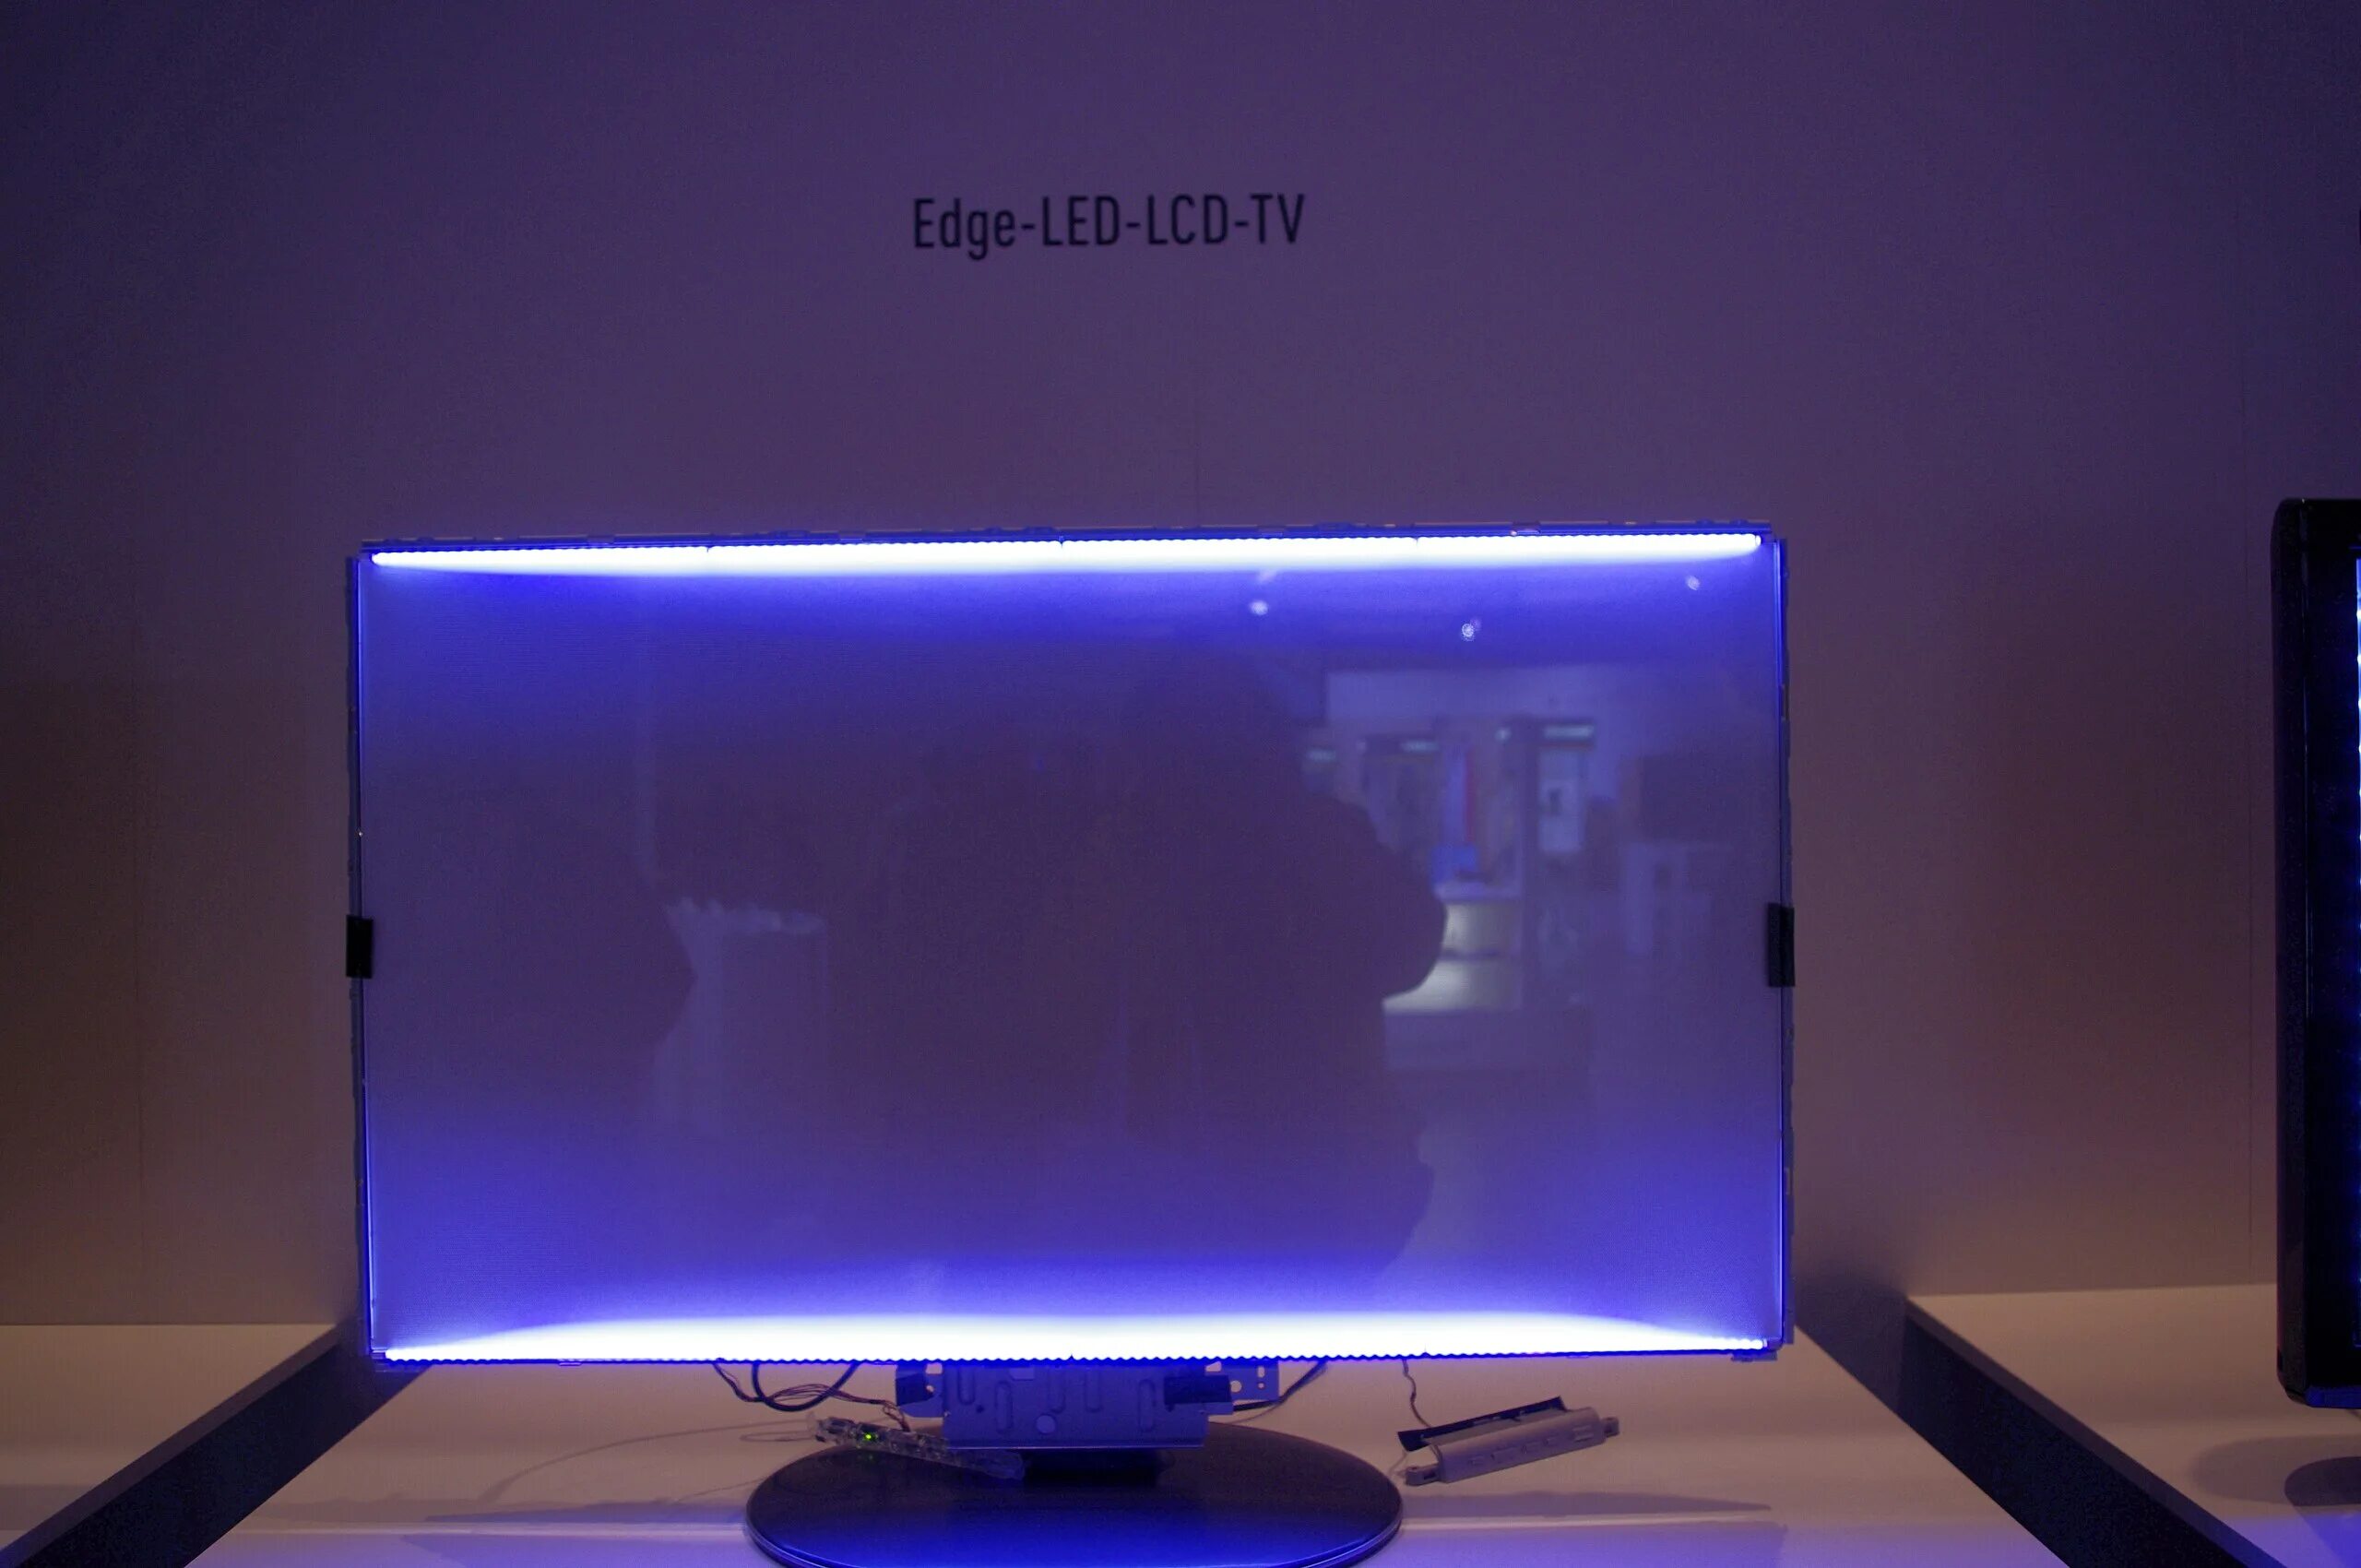 Подсветка для монитора купить. Edge led подсветка Samsung. Подсветка Edge led что это такое в телевизоре. Тип светодиодной подсветки: Edge led. Подсветка direct led что это такое в телевизоре.